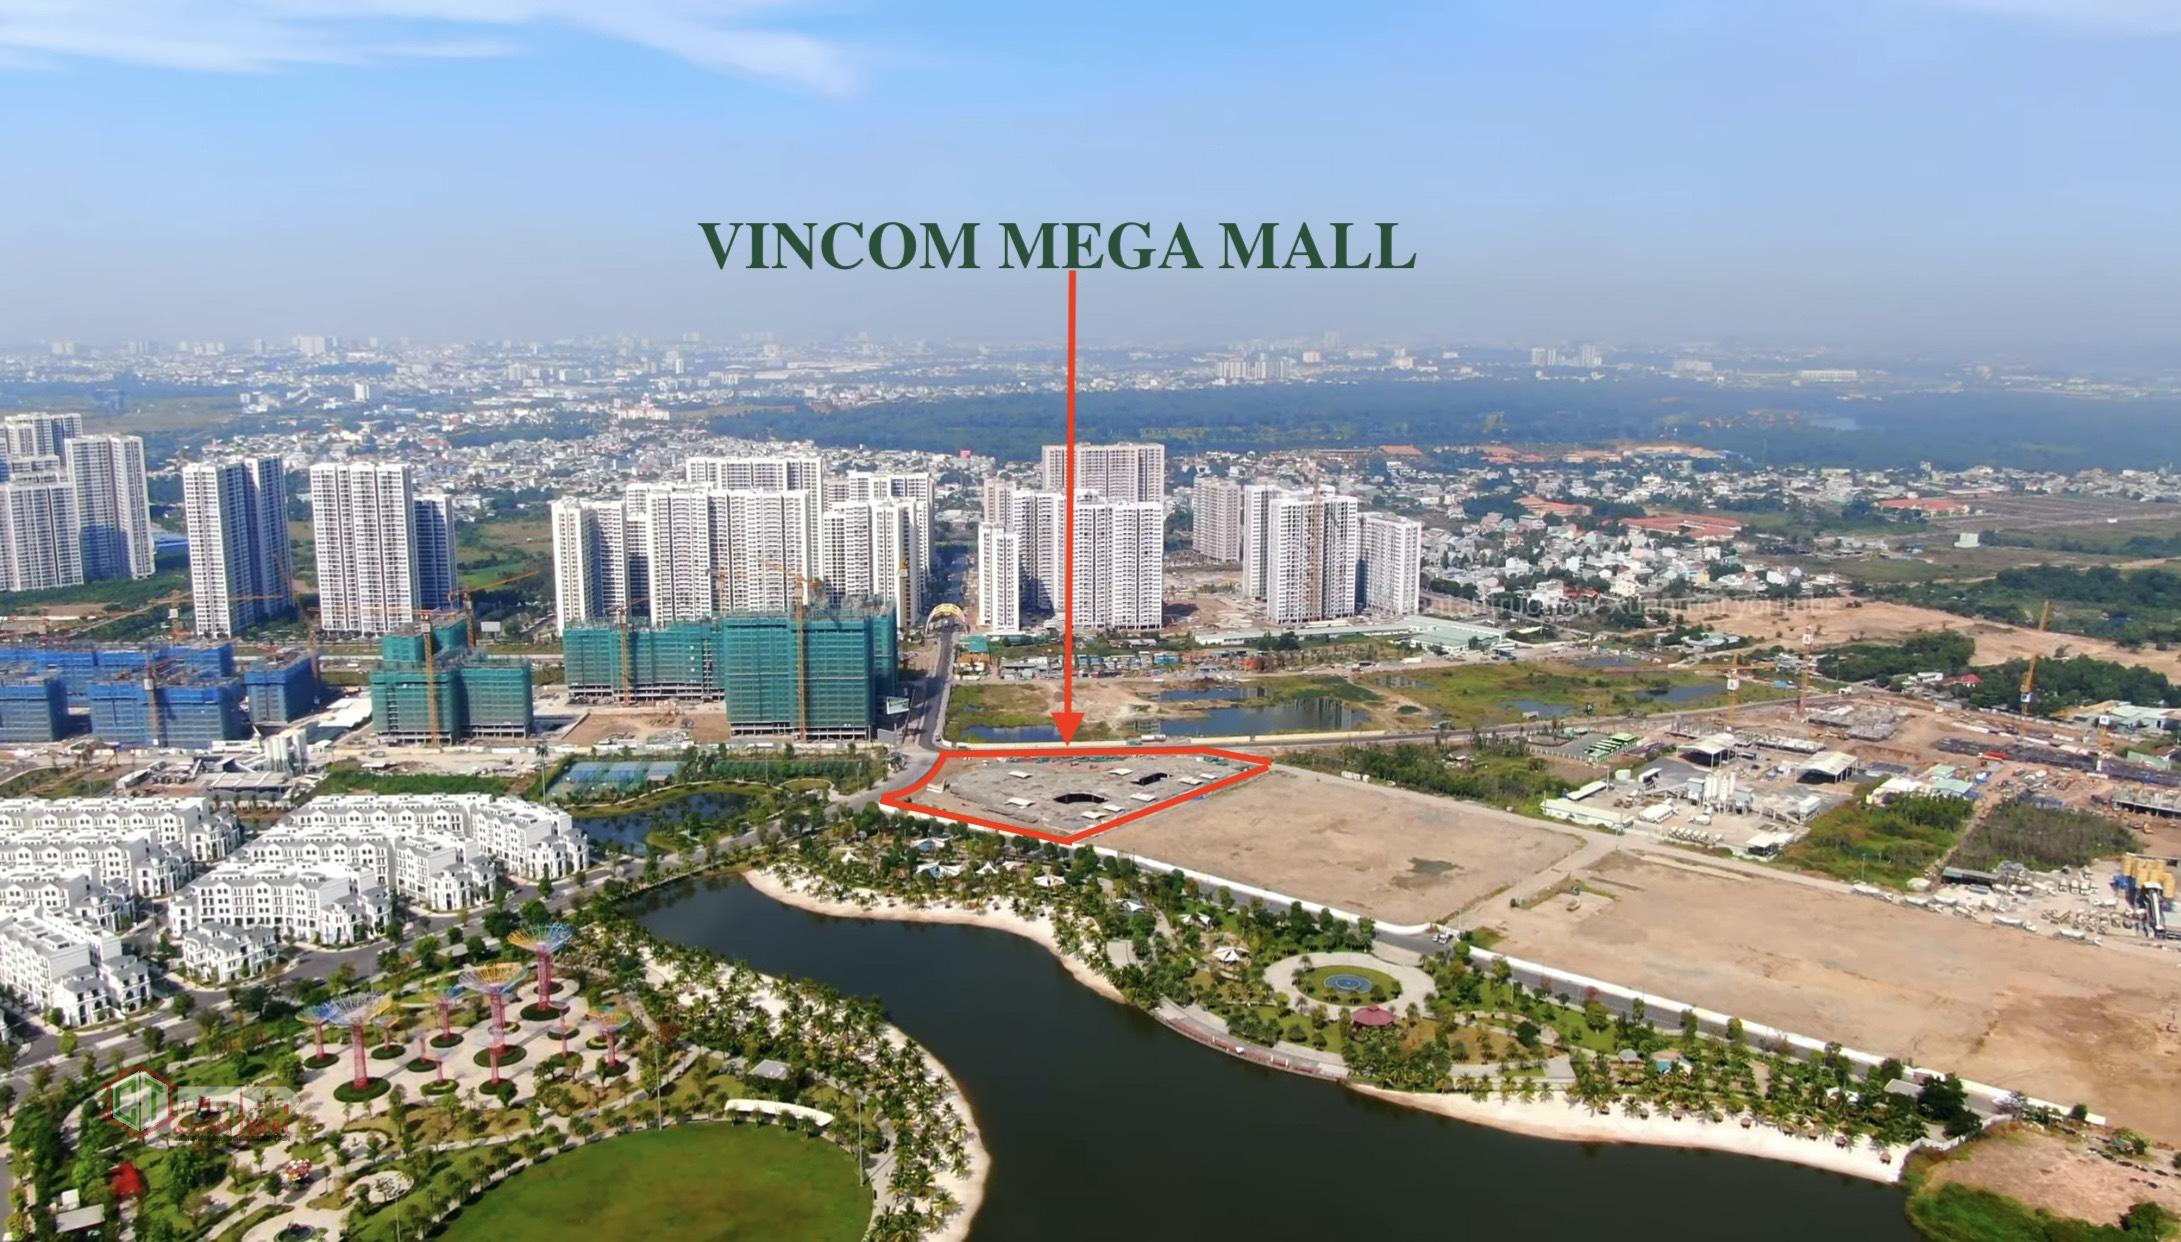 Tiến độ xây dựng Vincom Mega Mall nhìn tư trên cao - Hình xuantantruongtv